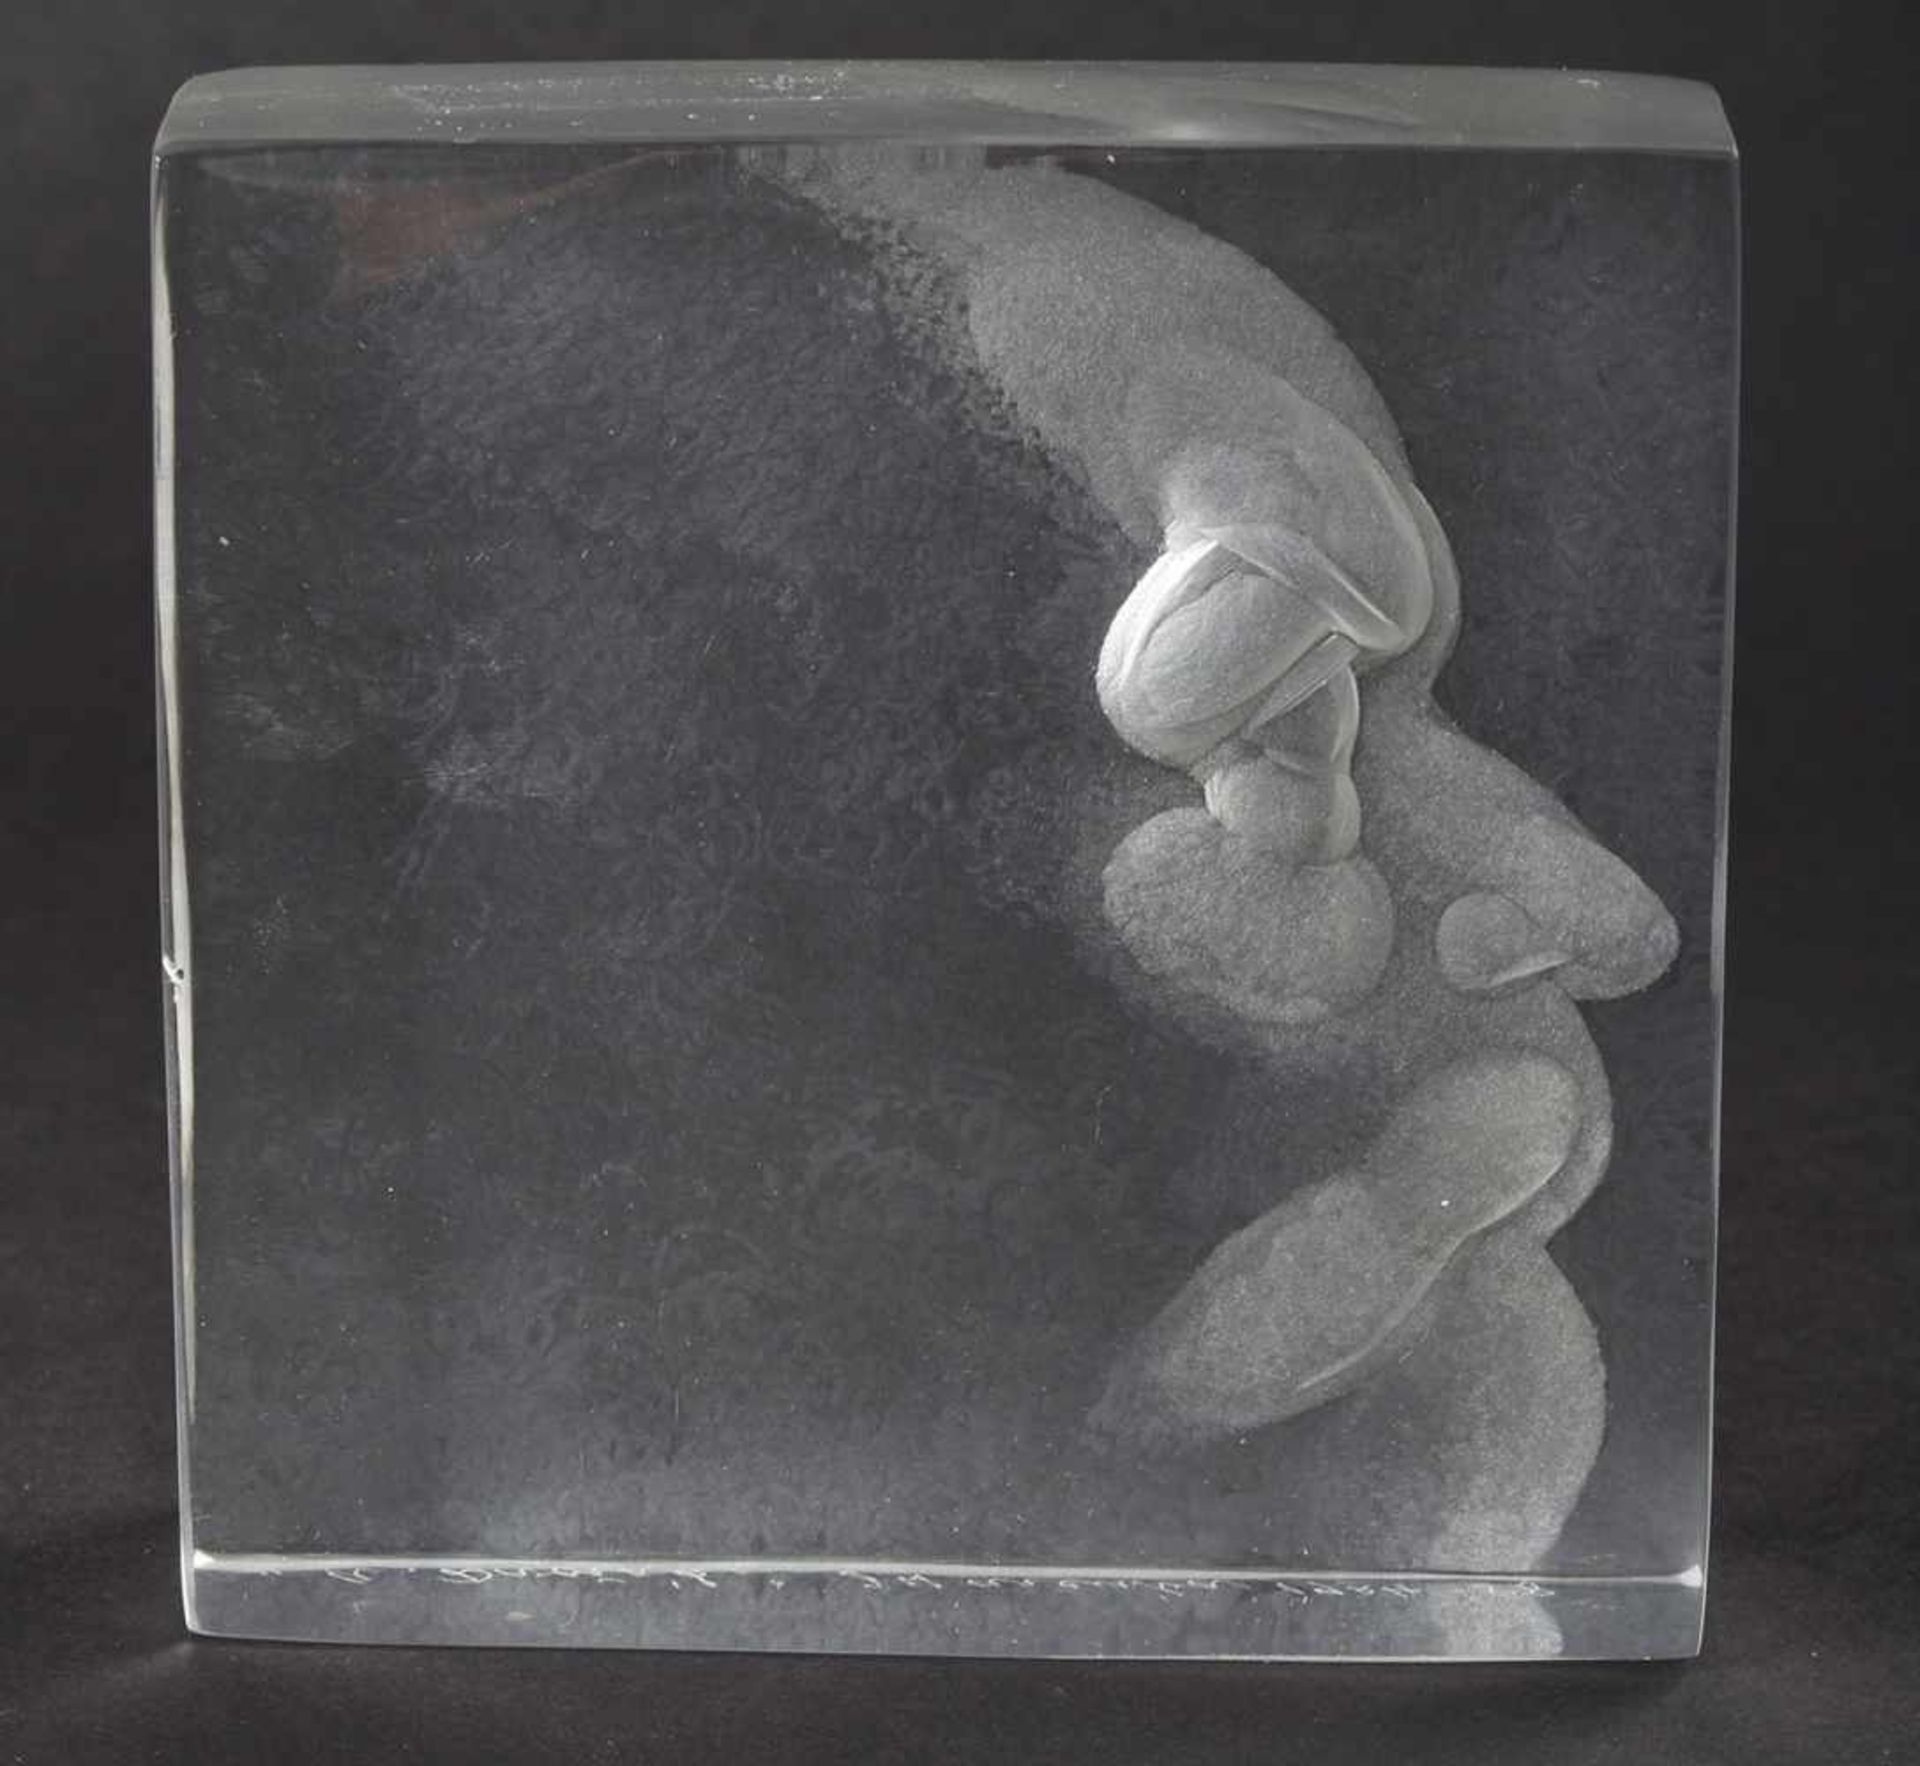 Harcuba, Jirí (1928 Harrachsdorf - 2013 Prag) polierter Glasblock, mit mattiertem Tiefschnittporträt - Bild 2 aus 2